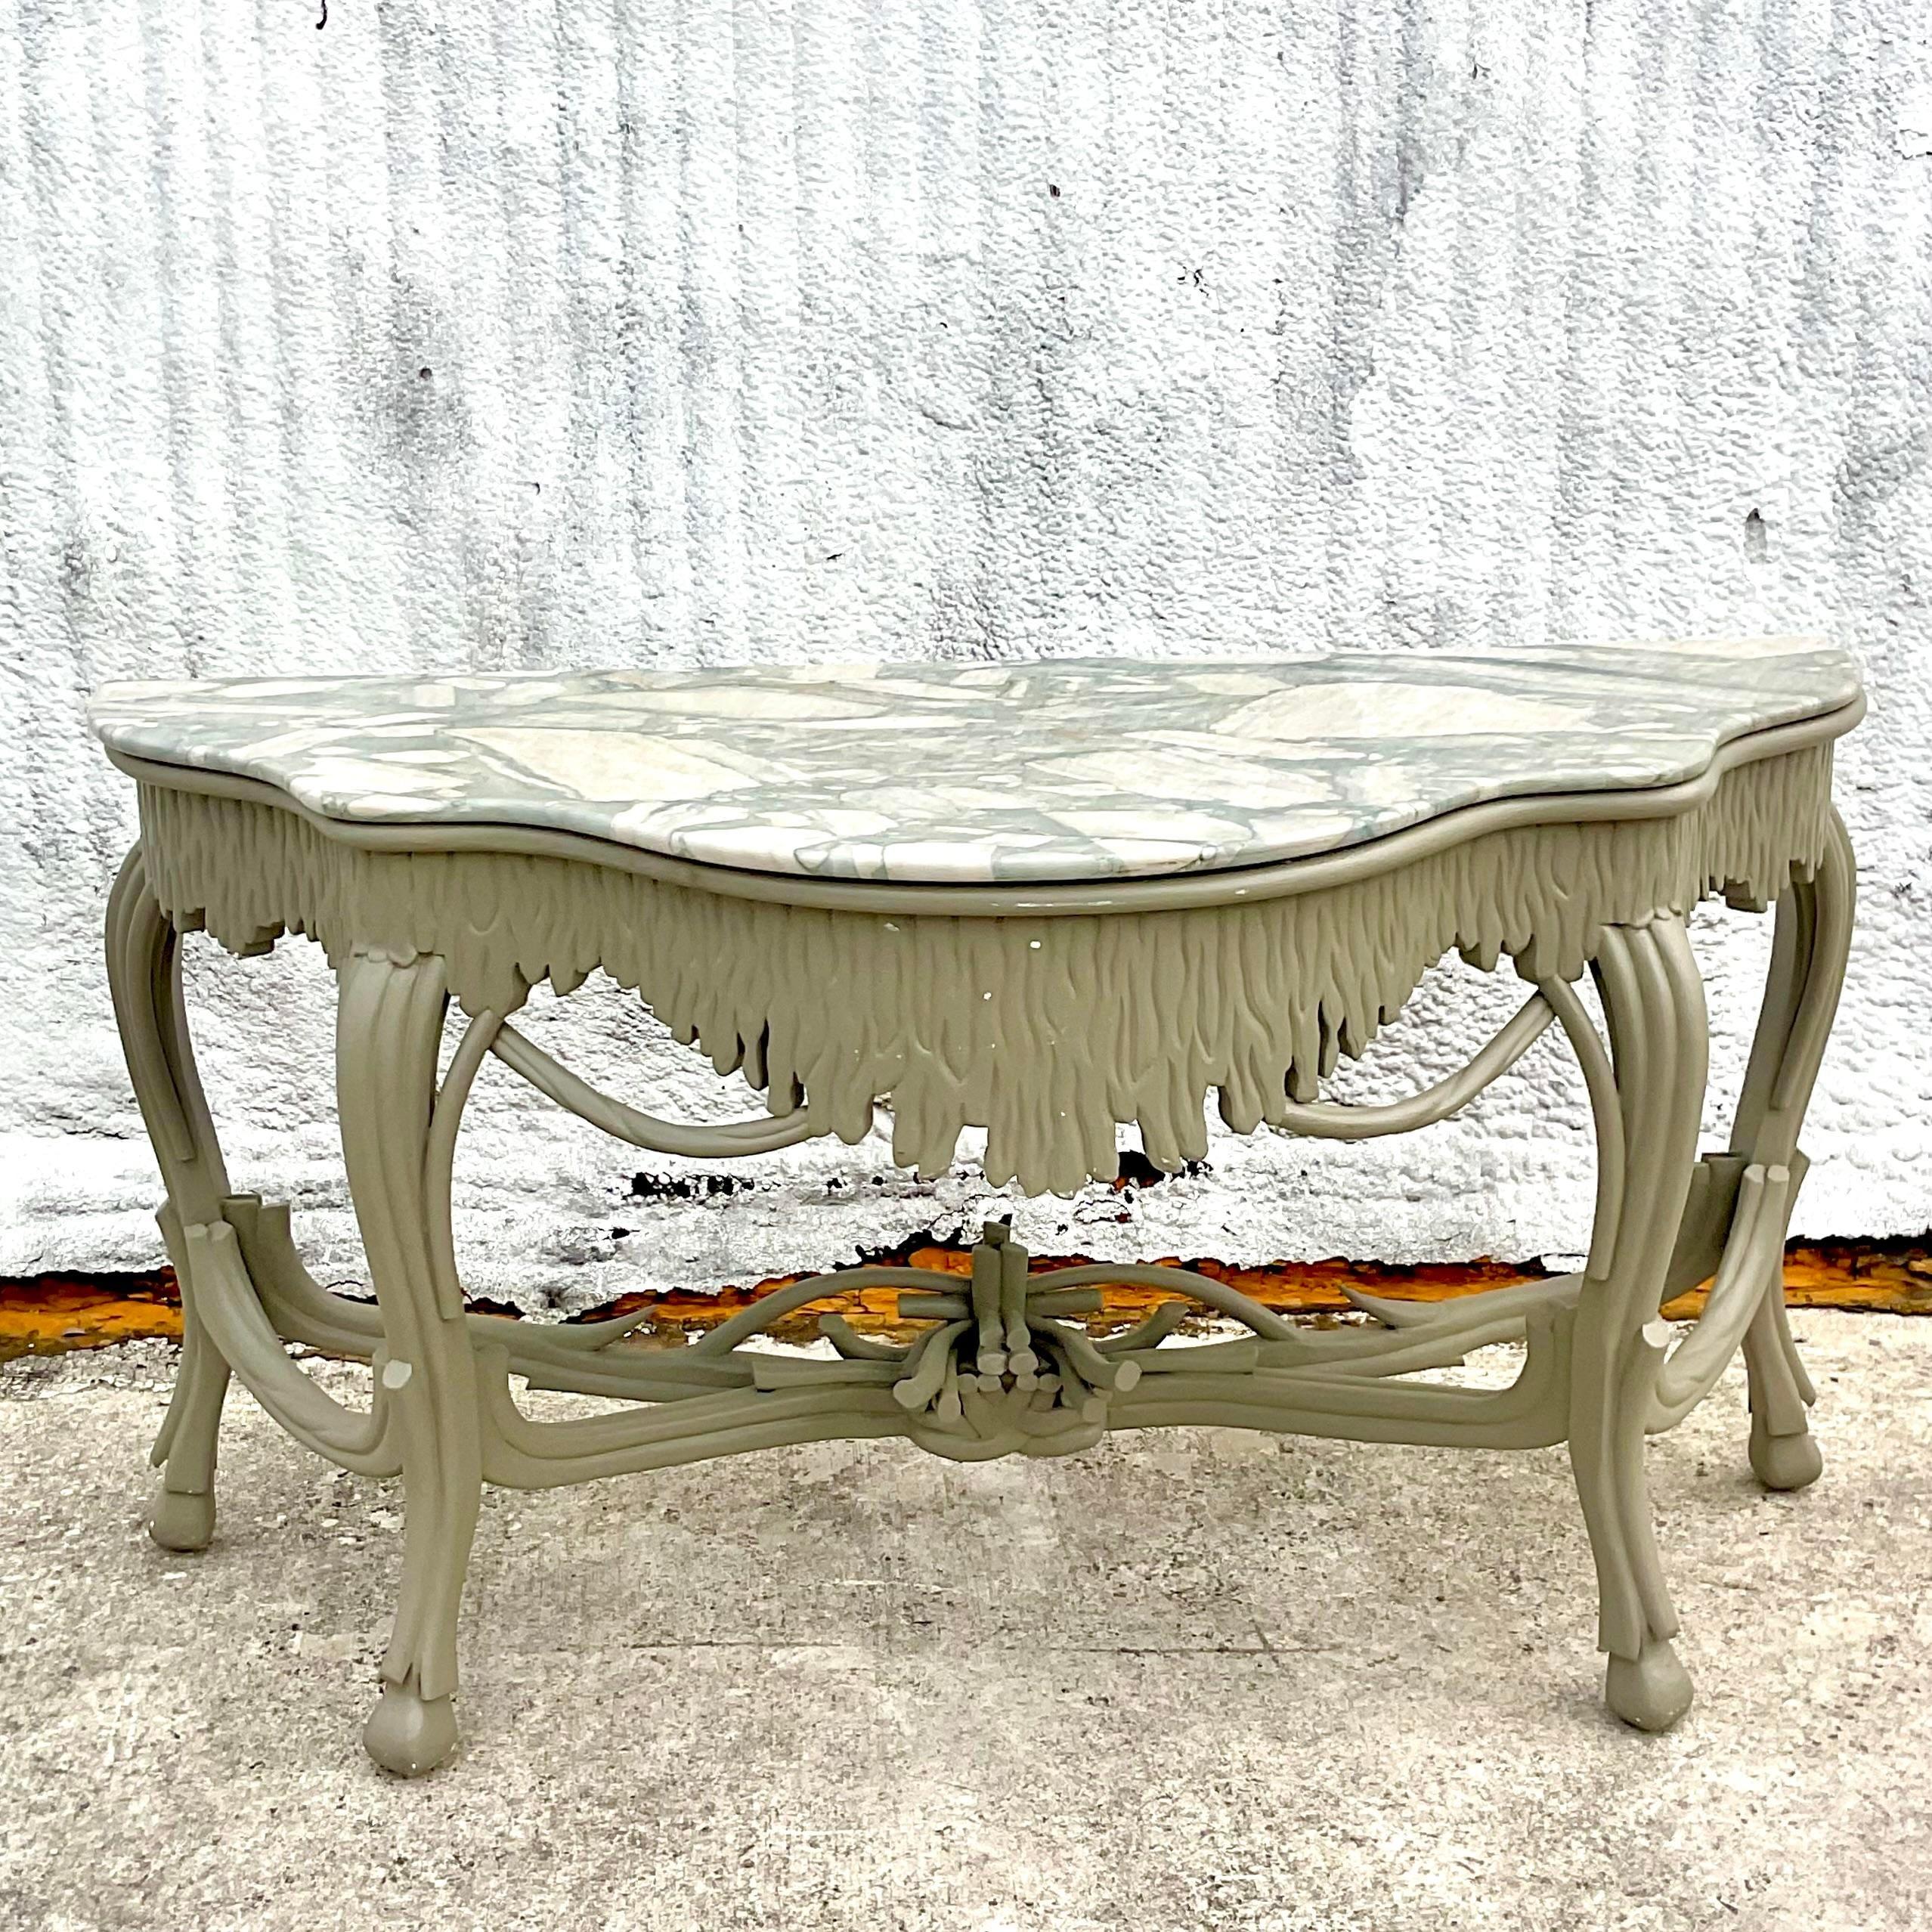 Der Vintage Regency Stone Top Faux Bois Console Table ist ein zeitlos eleganter amerikanischer Tisch. Dieser von der Opulenz des Regency-Designs inspirierte Tisch verfügt über eine raffinierte Bois-Faux-Finish-Oberfläche und eine luxuriöse